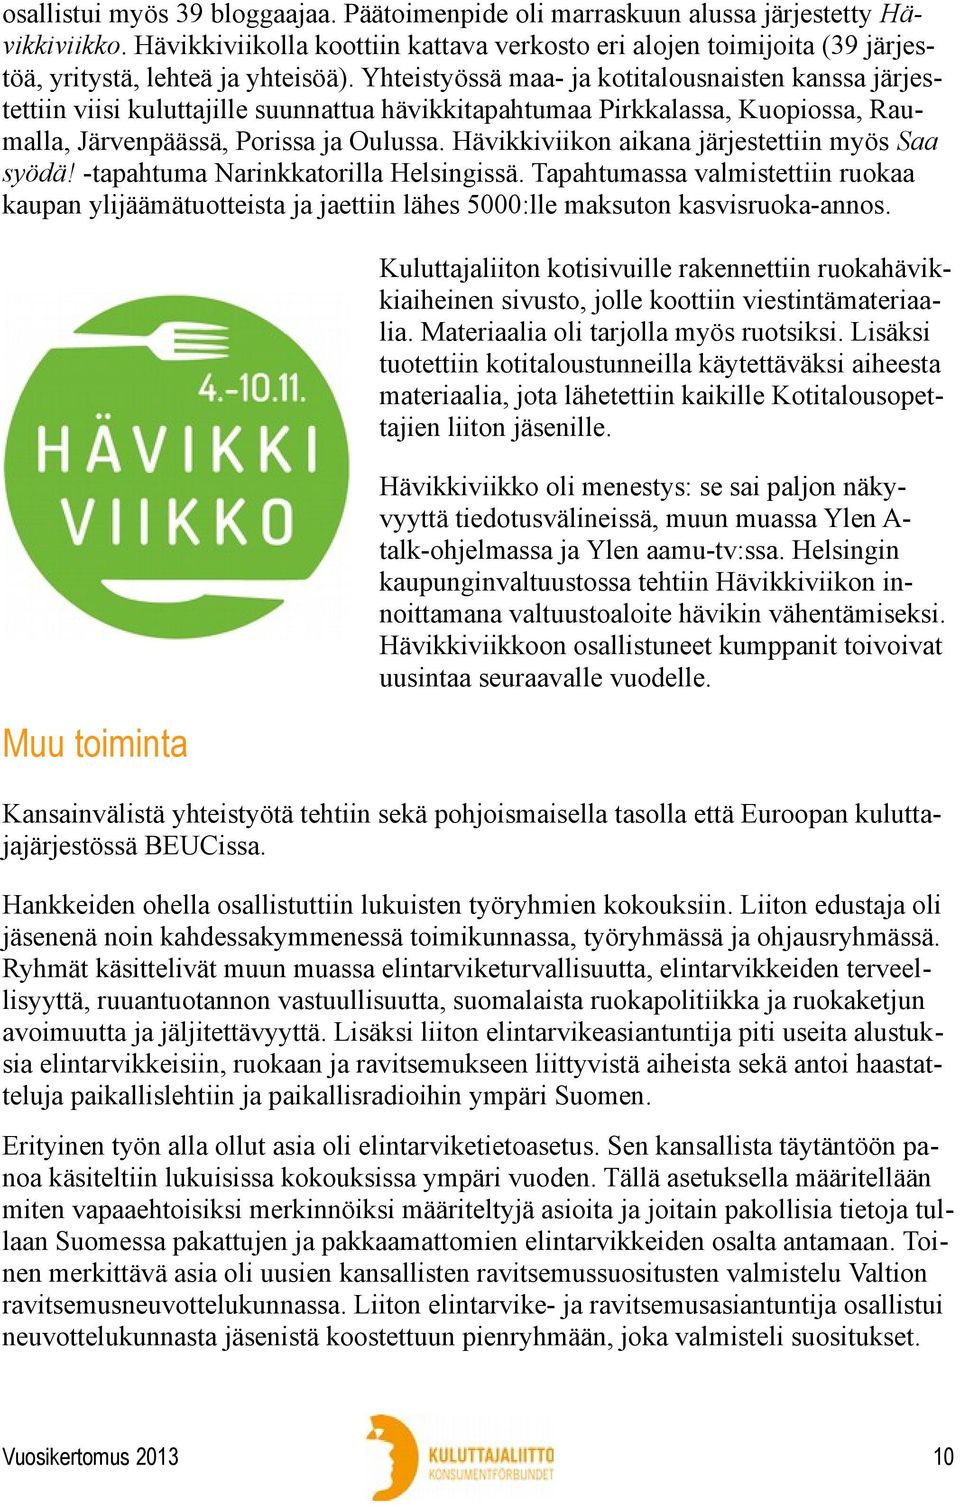 Yhteistyössä maa- ja kotitalousnaisten kanssa järjestettiin viisi kuluttajille suunnattua hävikkitapahtumaa Pirkkalassa, Kuopiossa, Raumalla, Järvenpäässä, Porissa ja Oulussa.